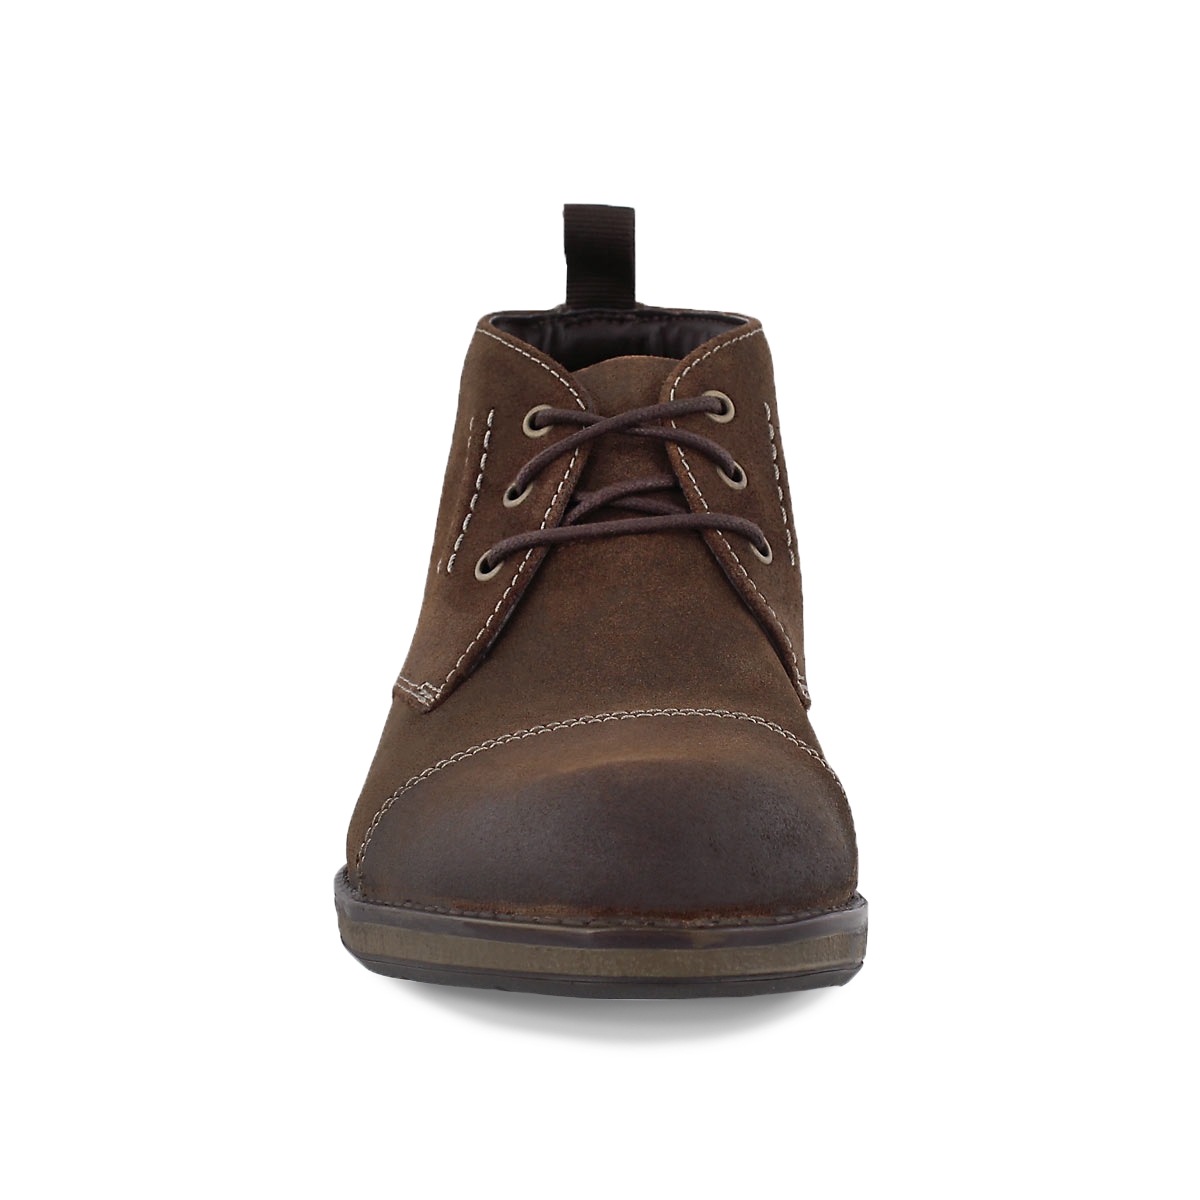 hinman leather mid chukka boots